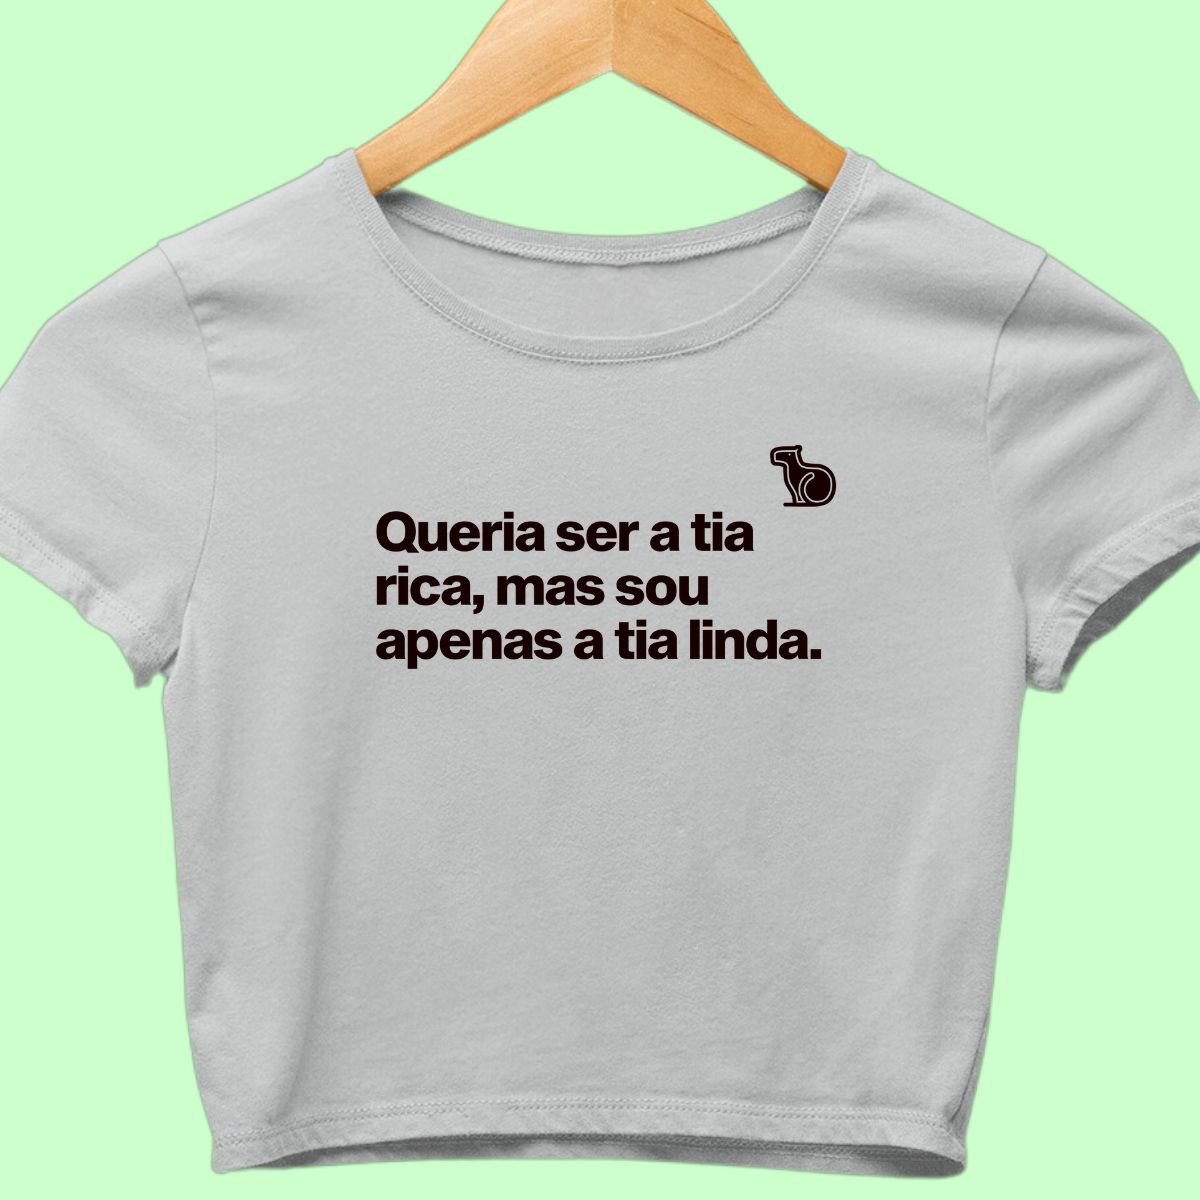 Camiseta cropped com a frase "Queria ser a tia rica, mas sou apenas a tia linda." cinza.